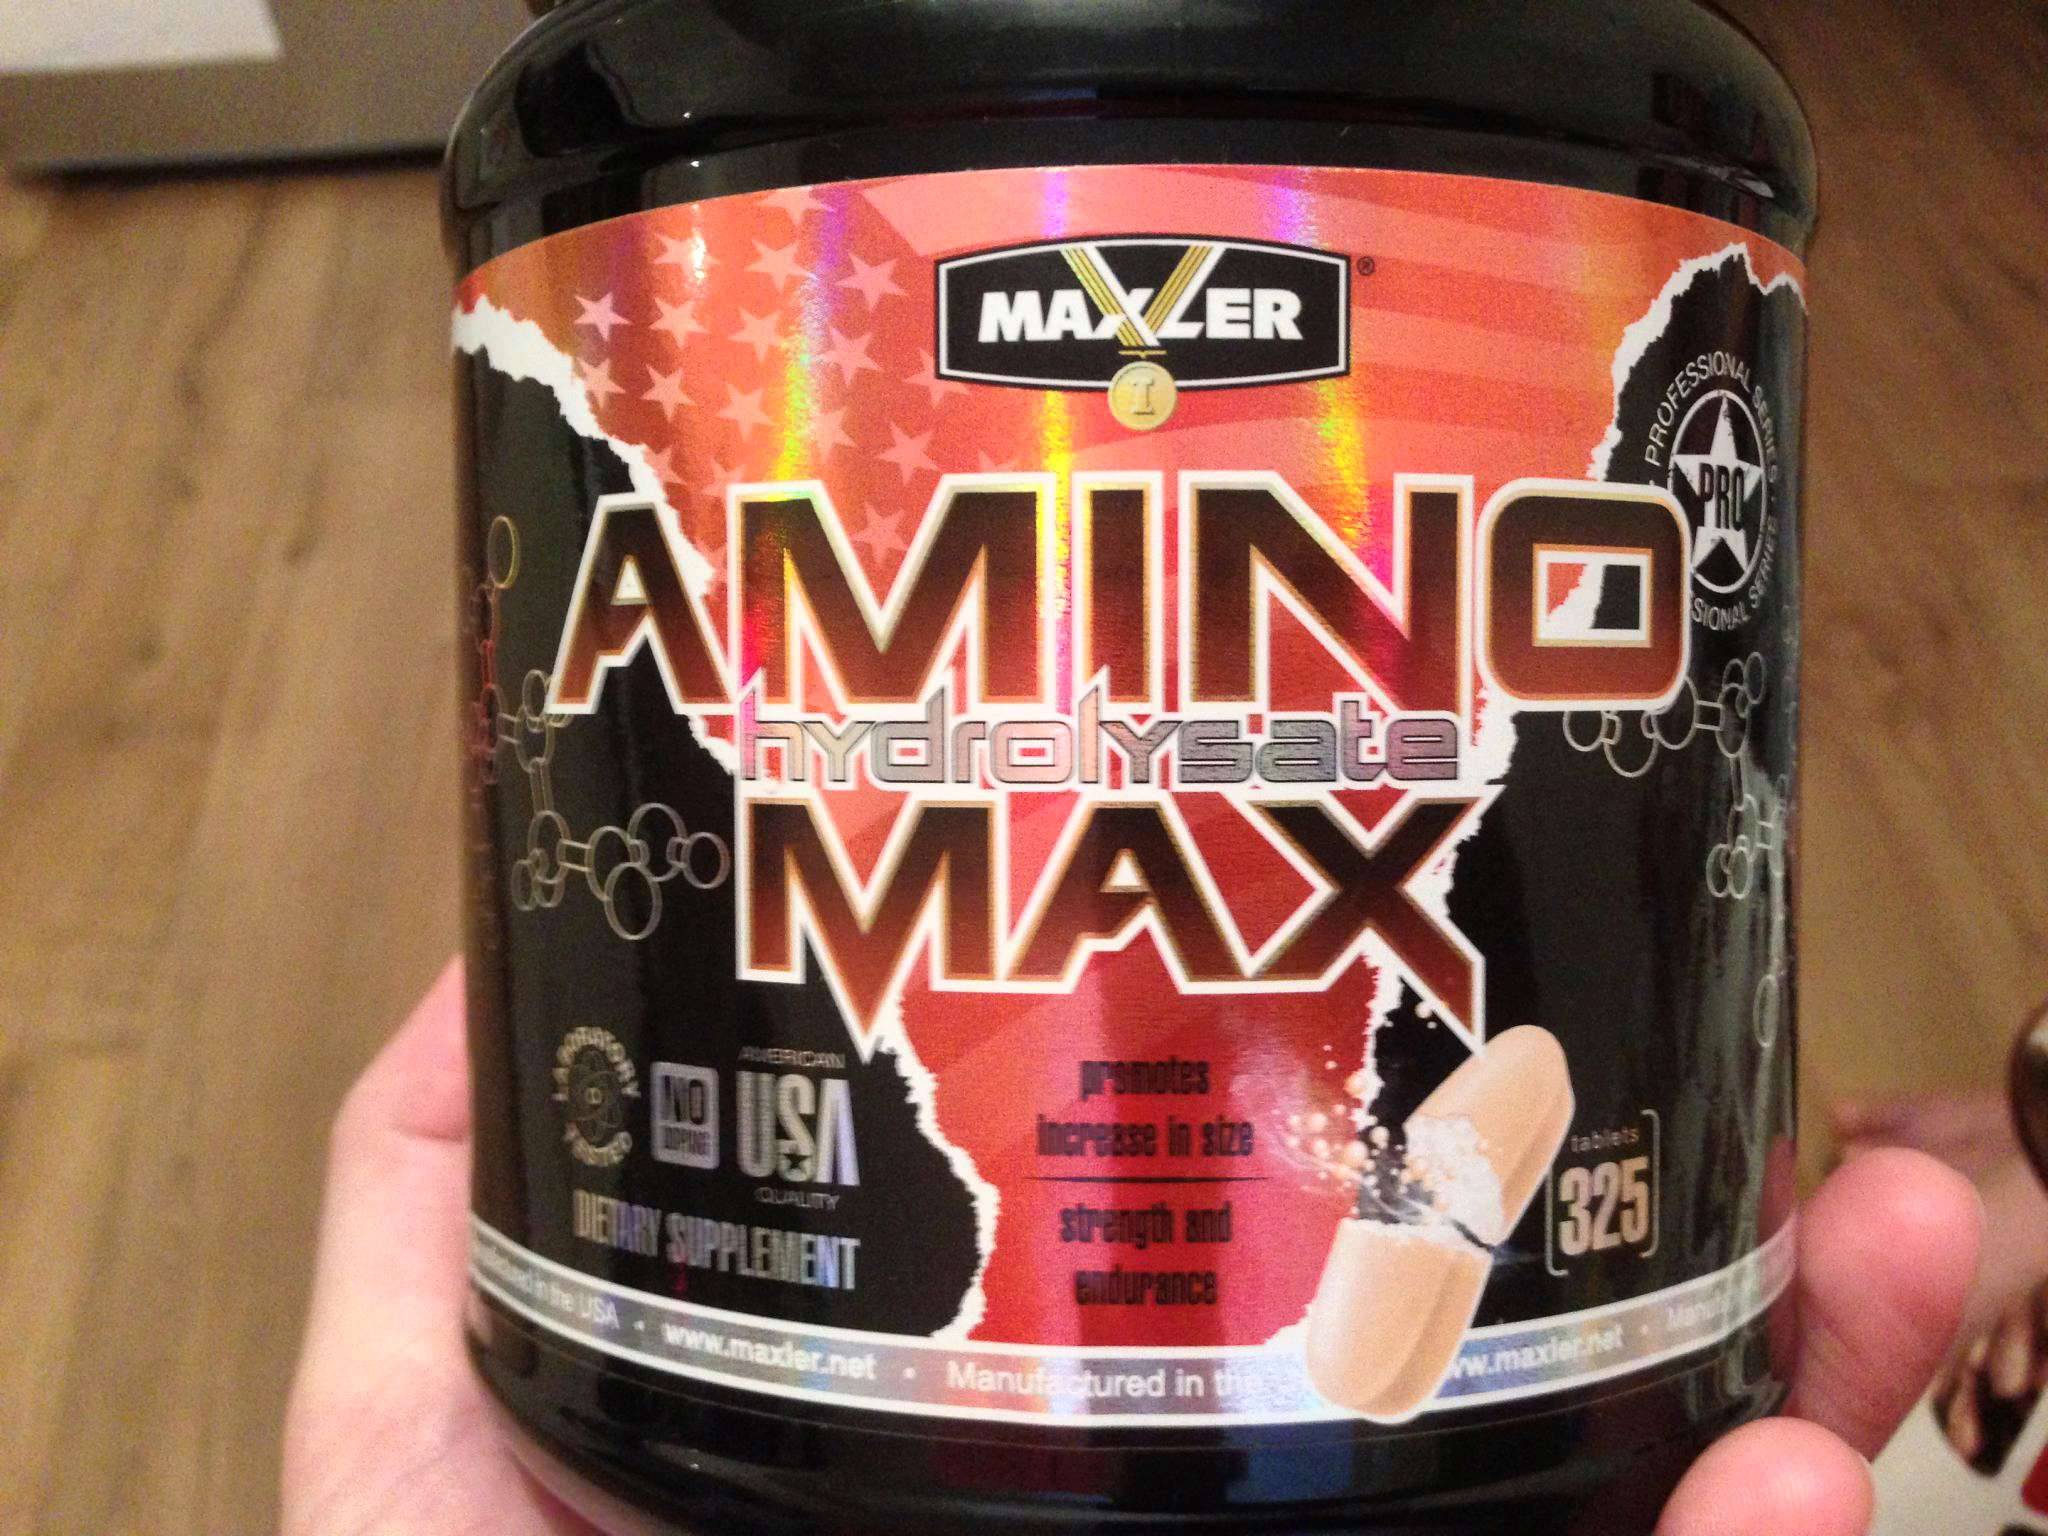 Amino max hydrolysate от maxler